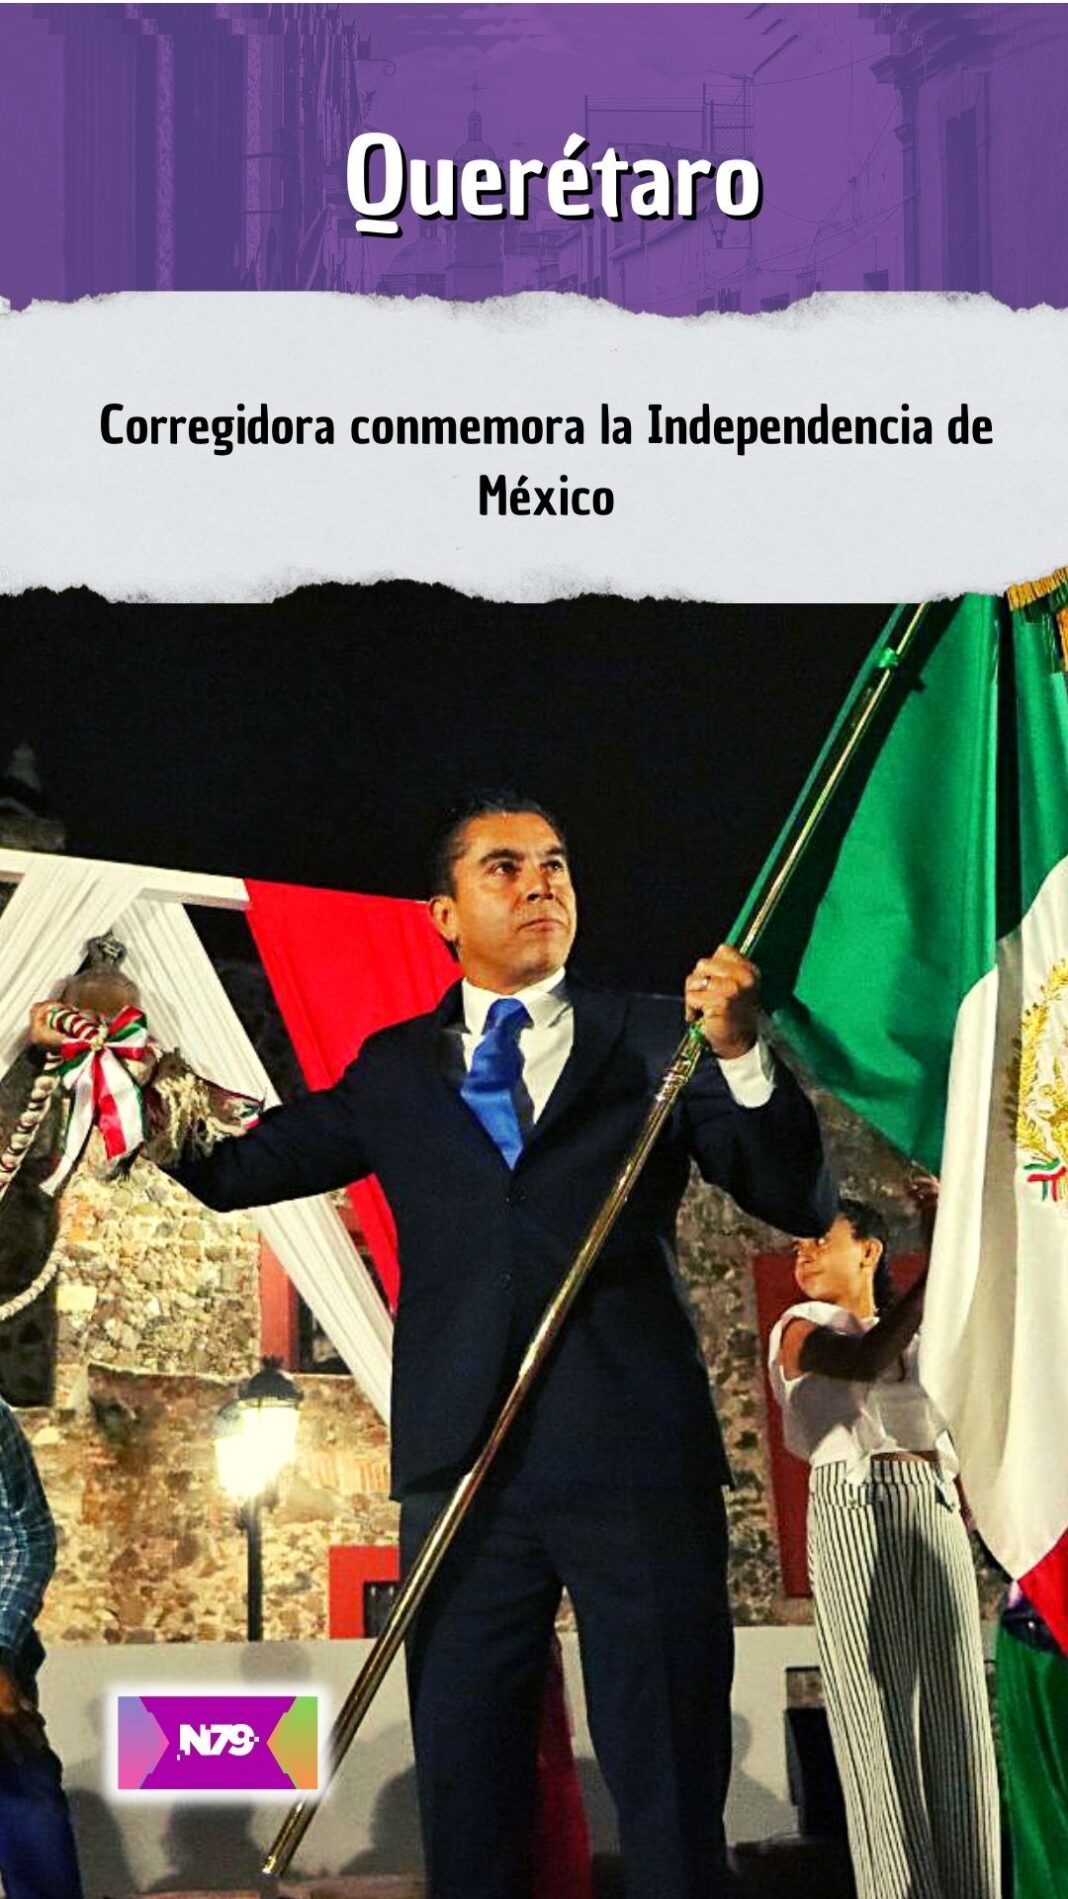 Corregidora conmemora la Independencia de México